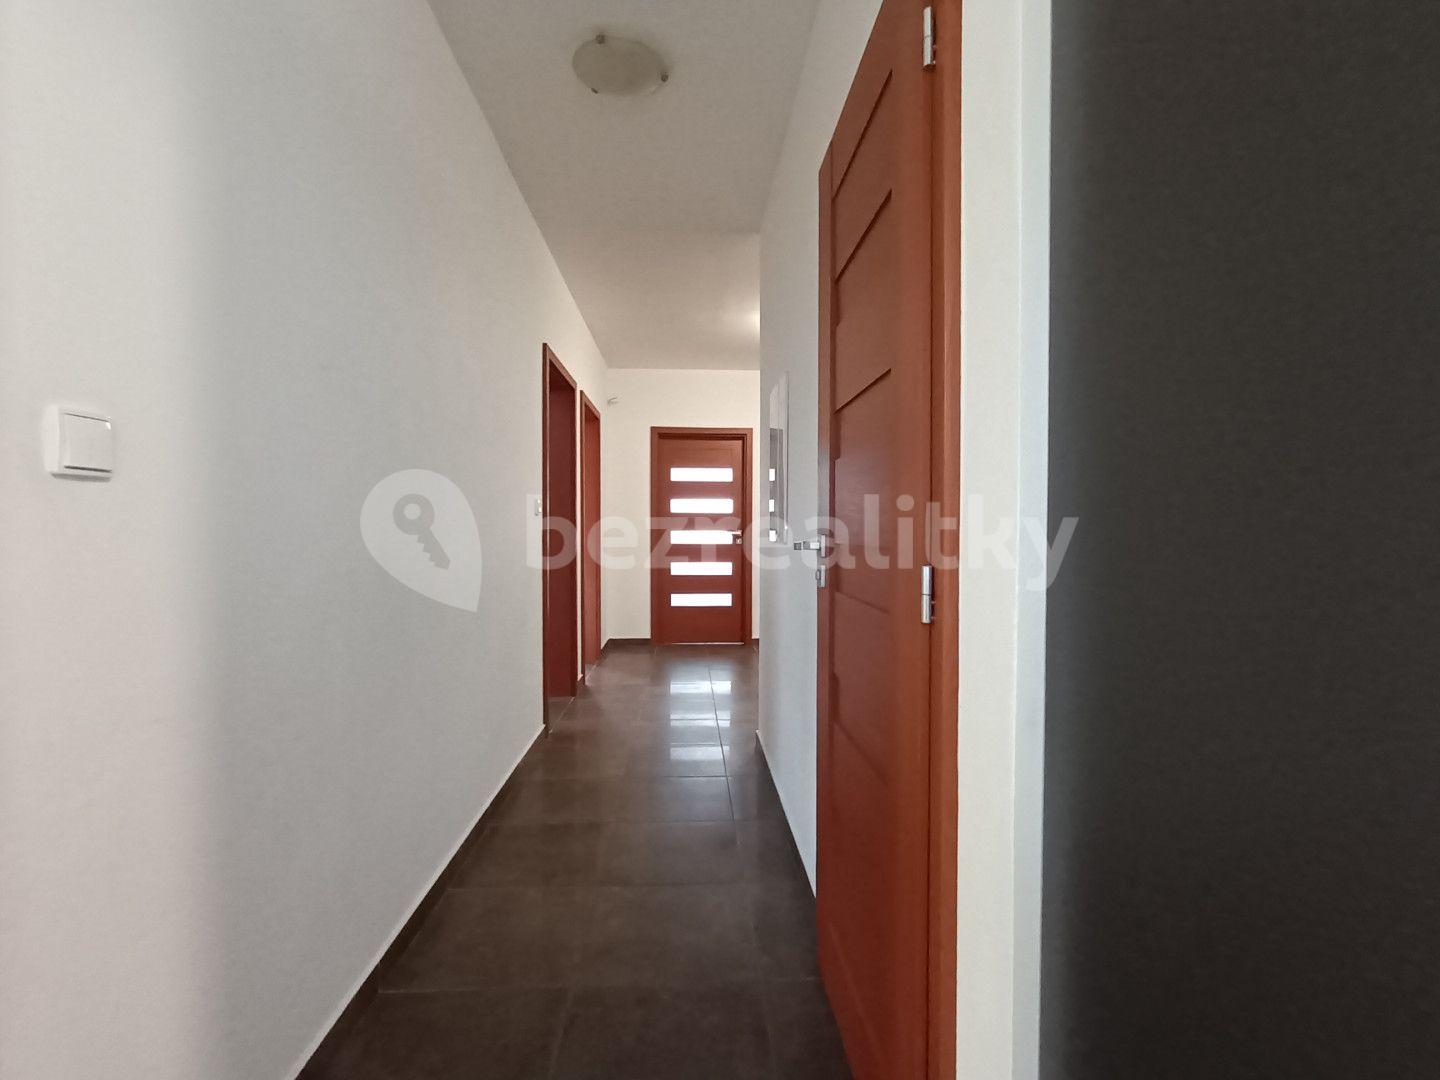 4 bedroom flat for sale, 81 m², Kpt. Nálepky, Karlovy Vary, Karlovarský Region